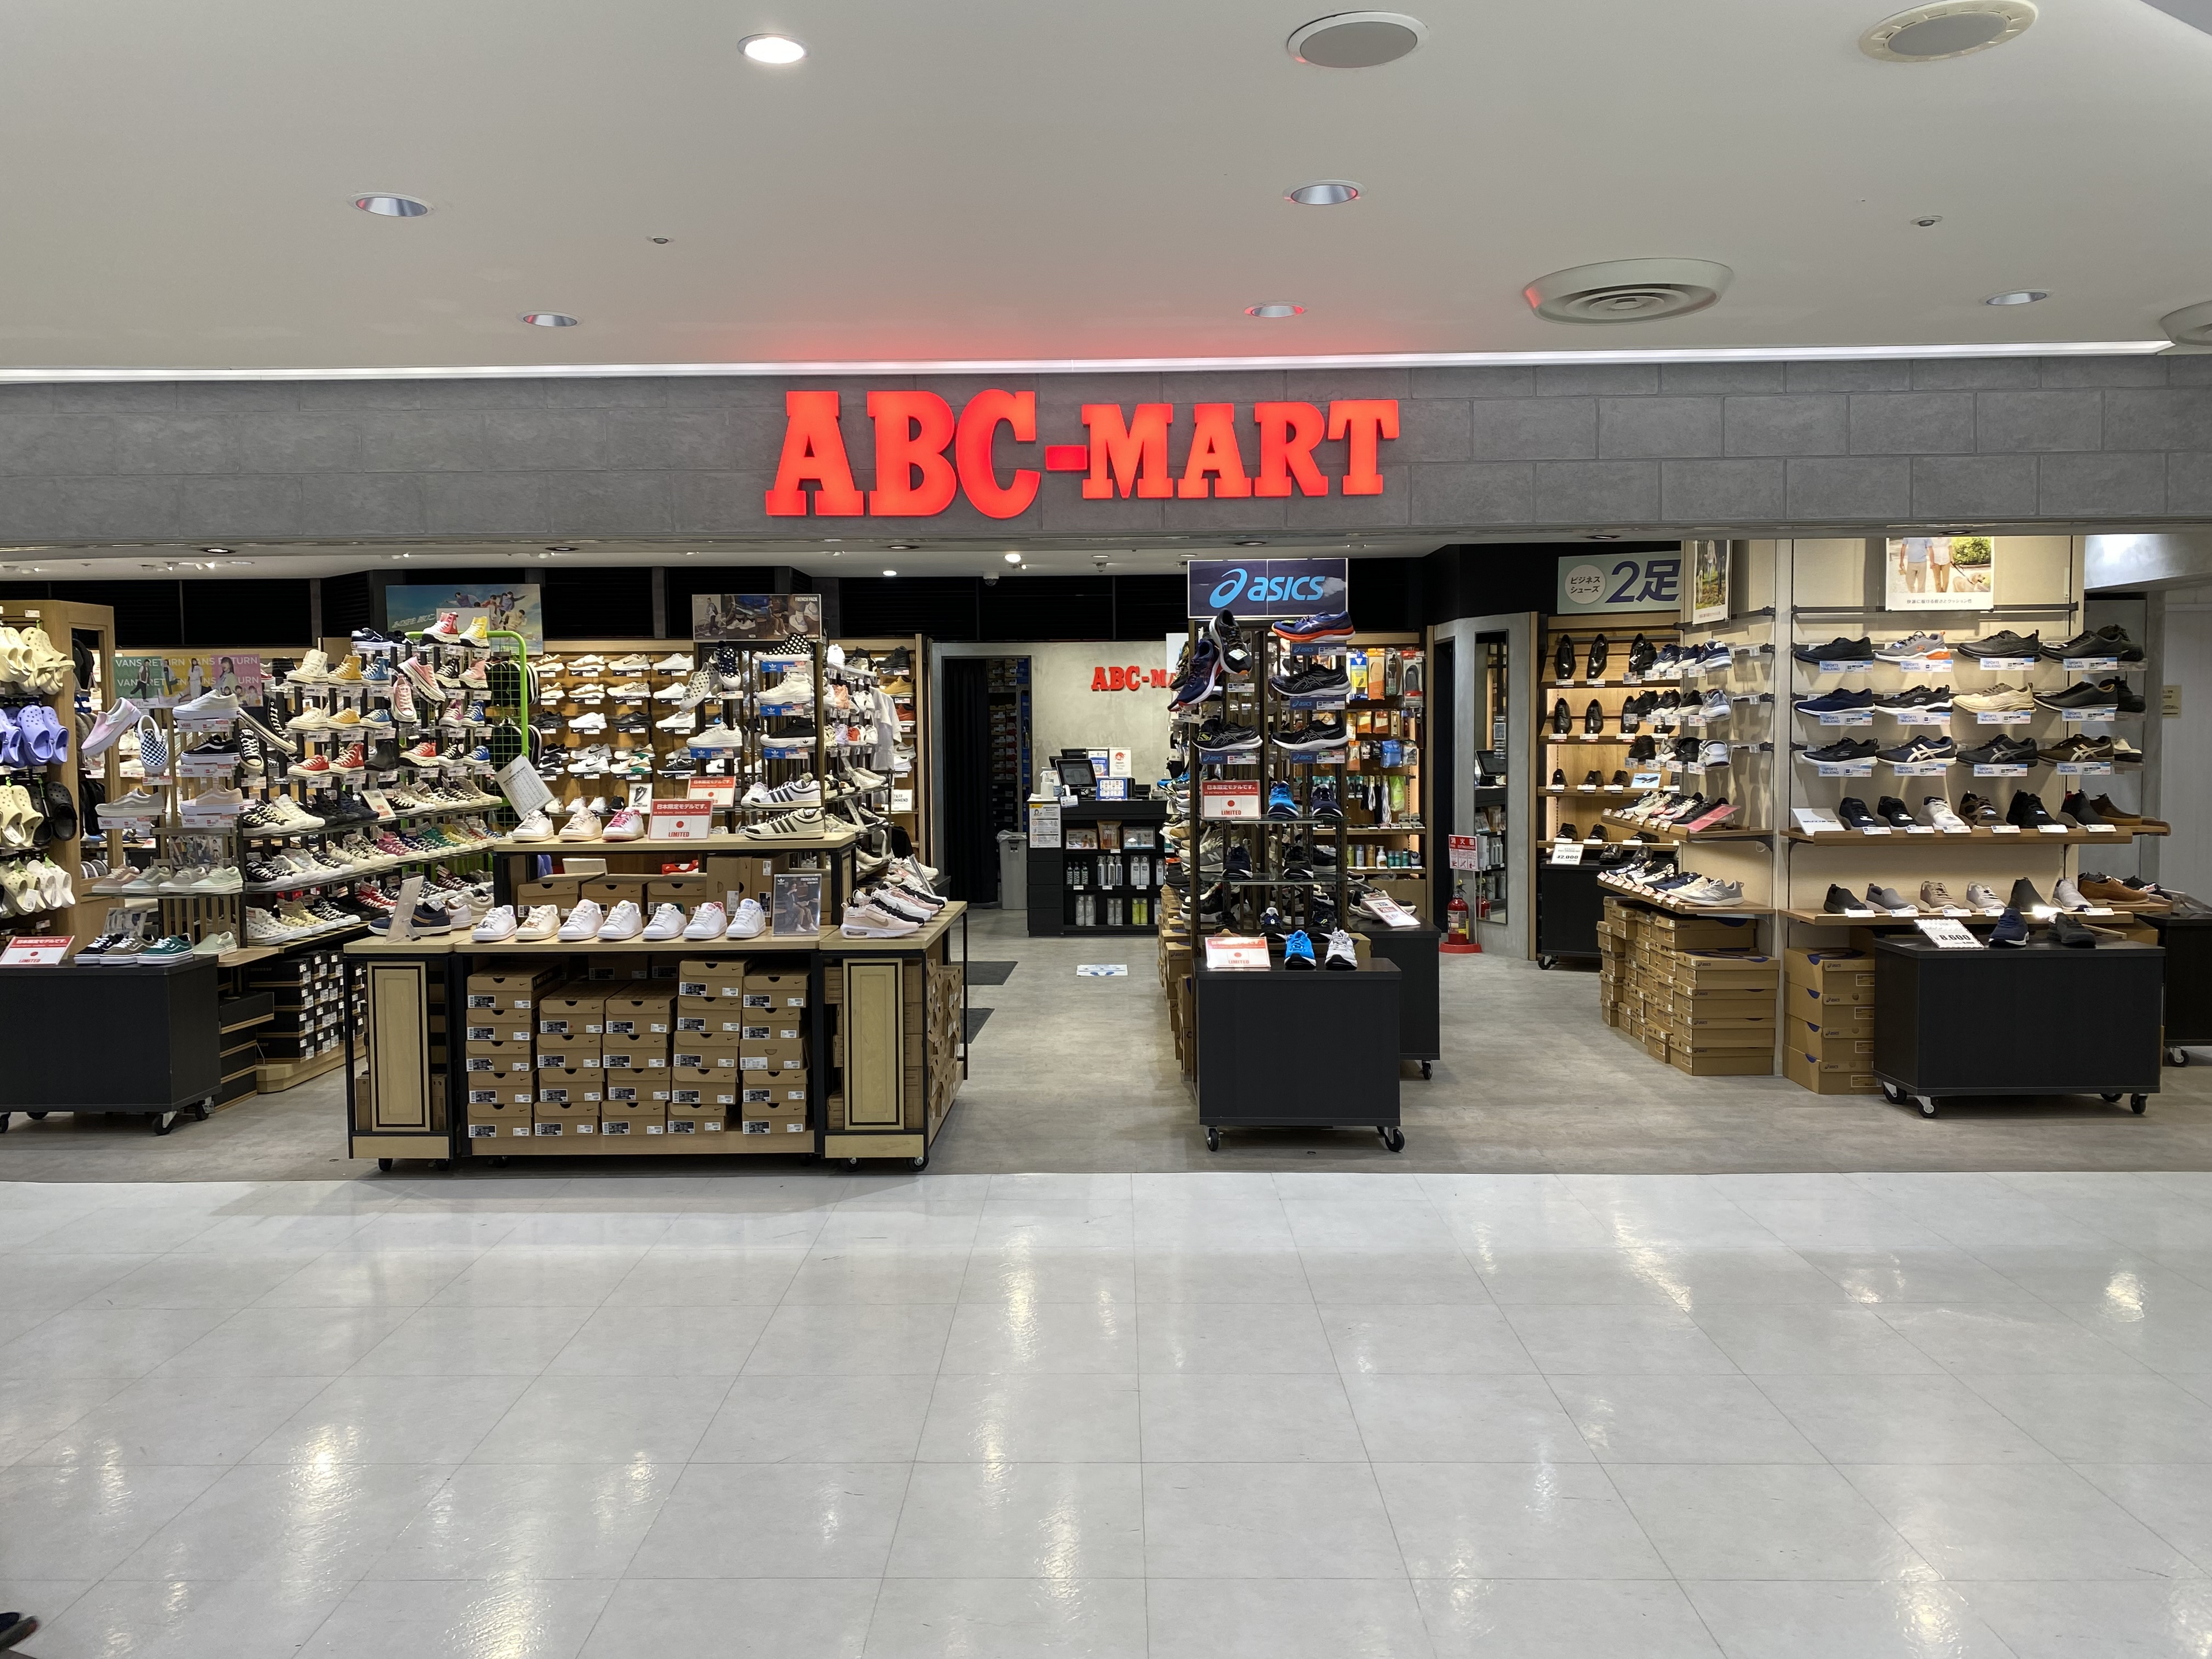 ABC-MART成田机场第1航站楼店的店铺外观照片